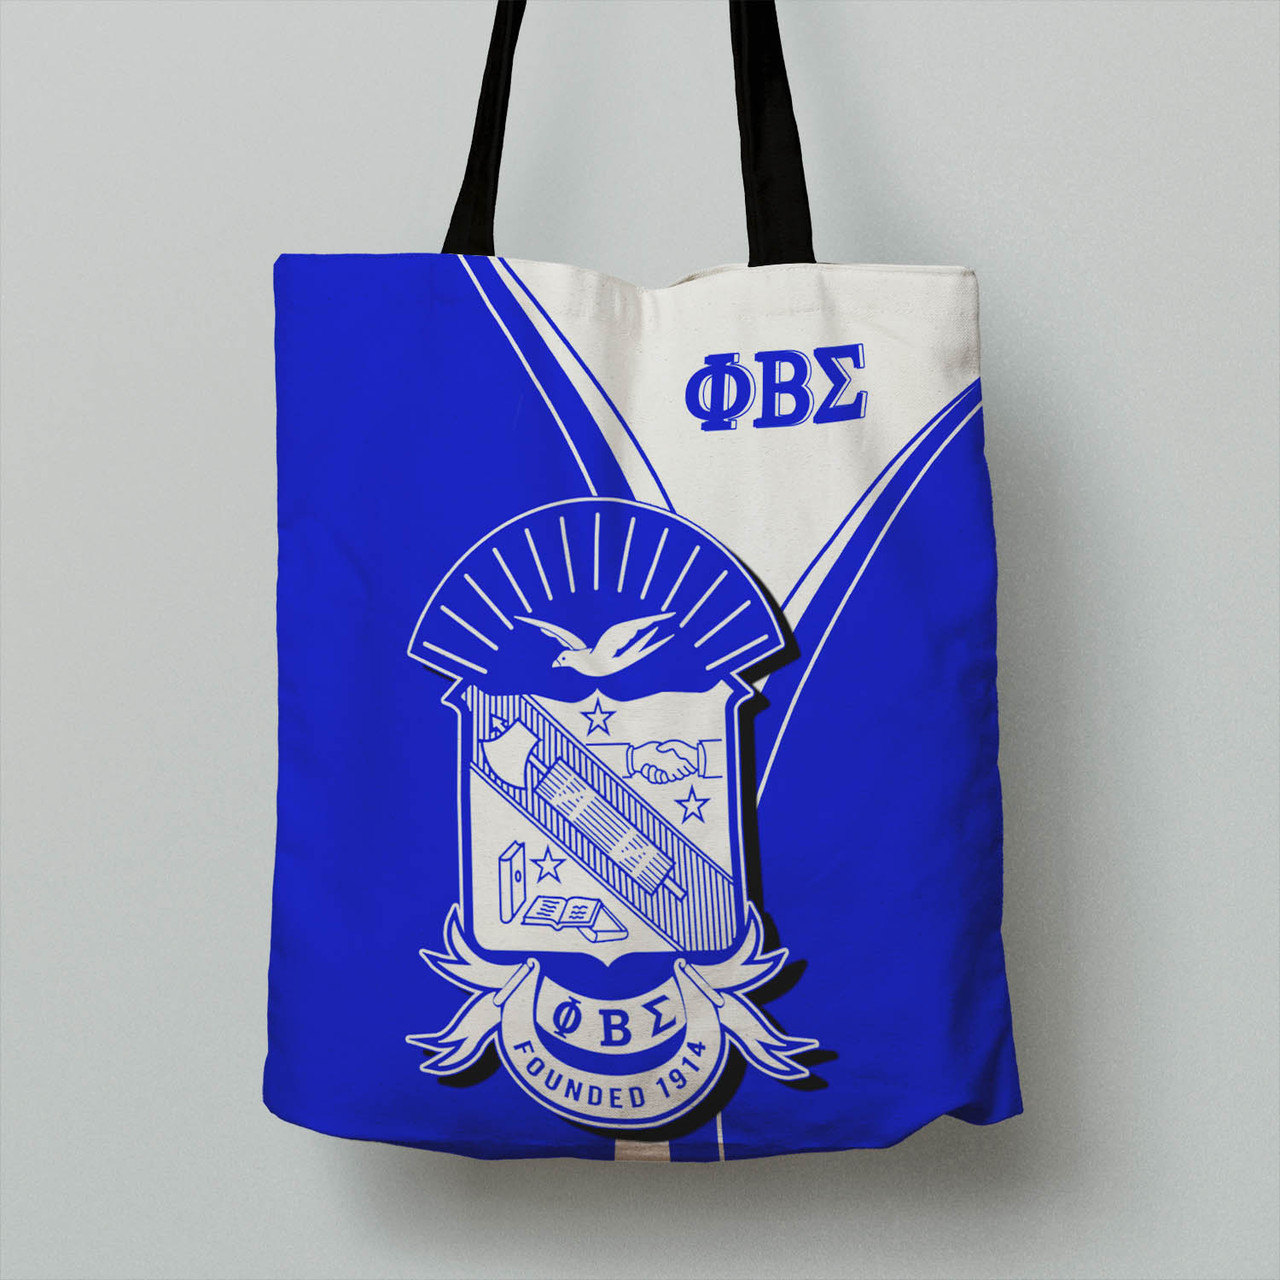 Phi Beta Sigma Tote Bag - Fraternity Pride Version Tote Bag